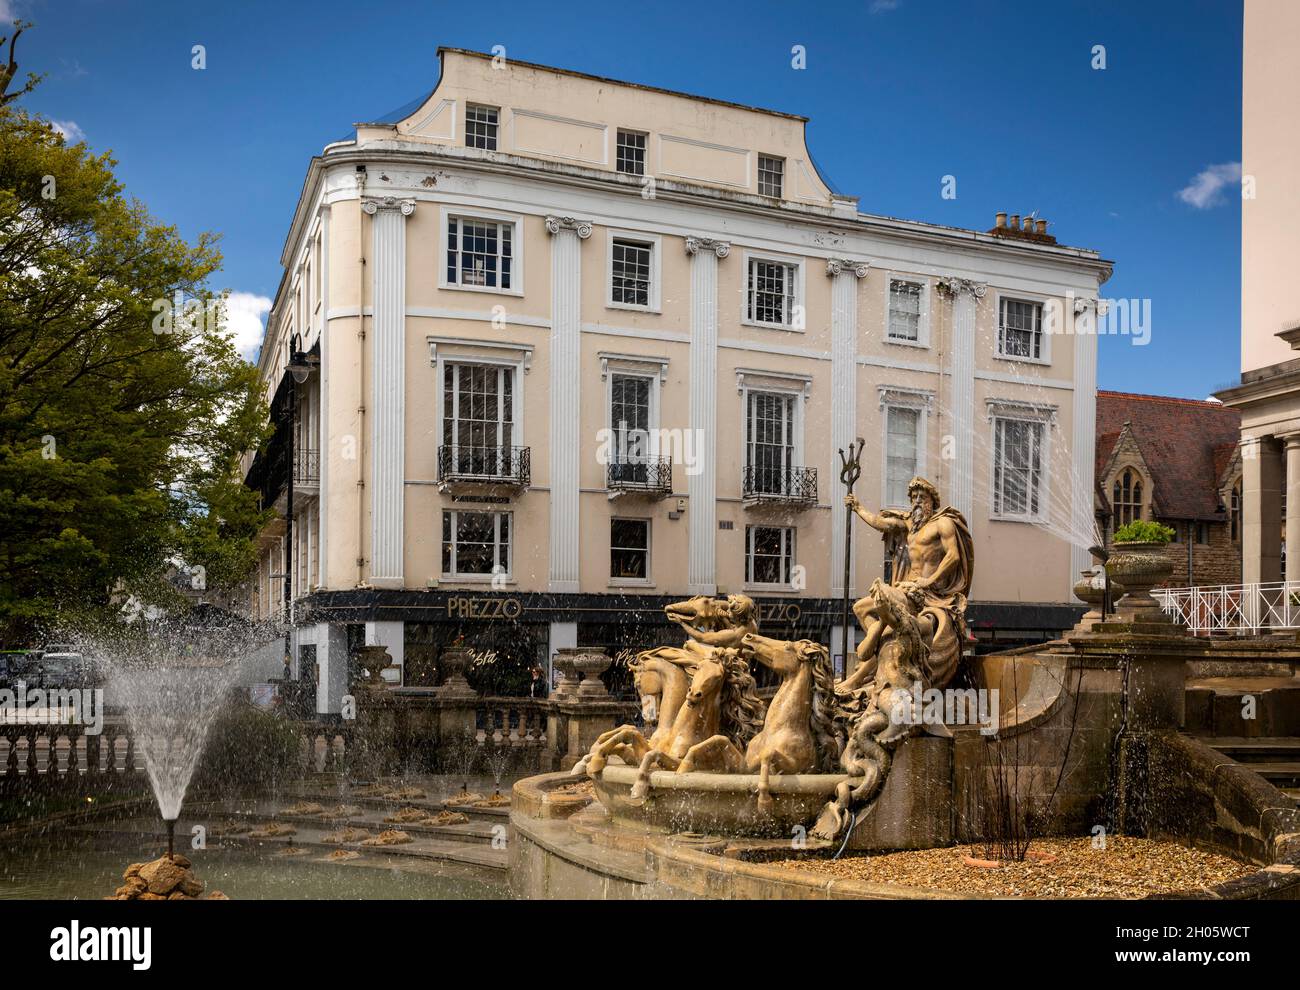 UK, Gloucestershire, Cheltenham, The Promenade, Neptune’s Fountain Stock Photo